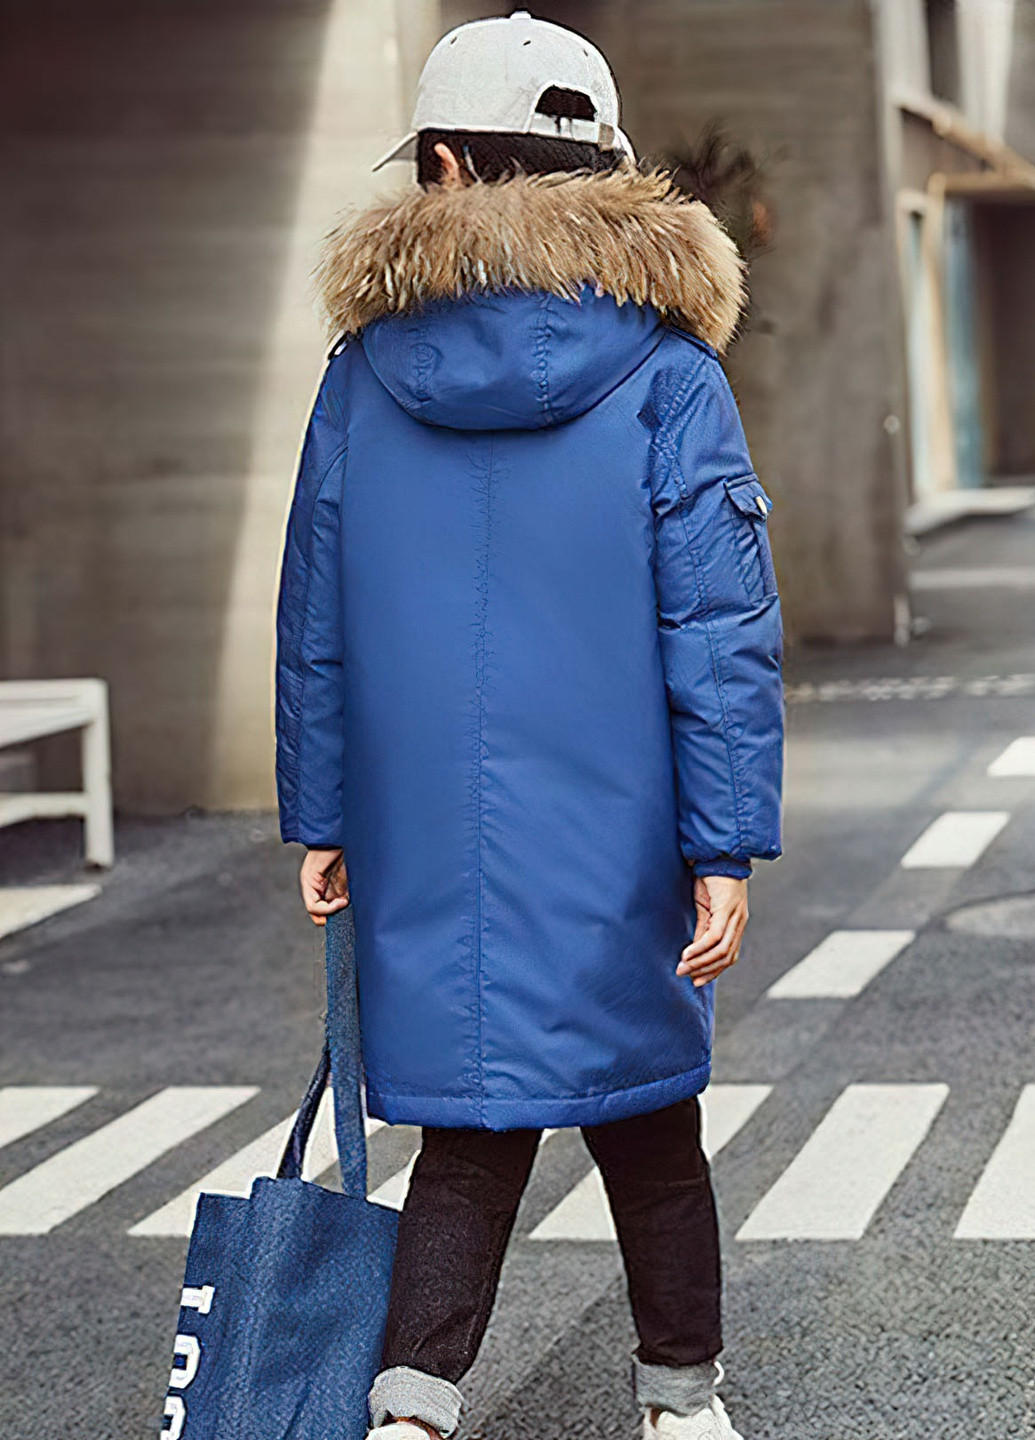 Синяя демисезонная куртка для мальчика пуховая зимняя 8497 170 см синий 63136 DobraMAMA